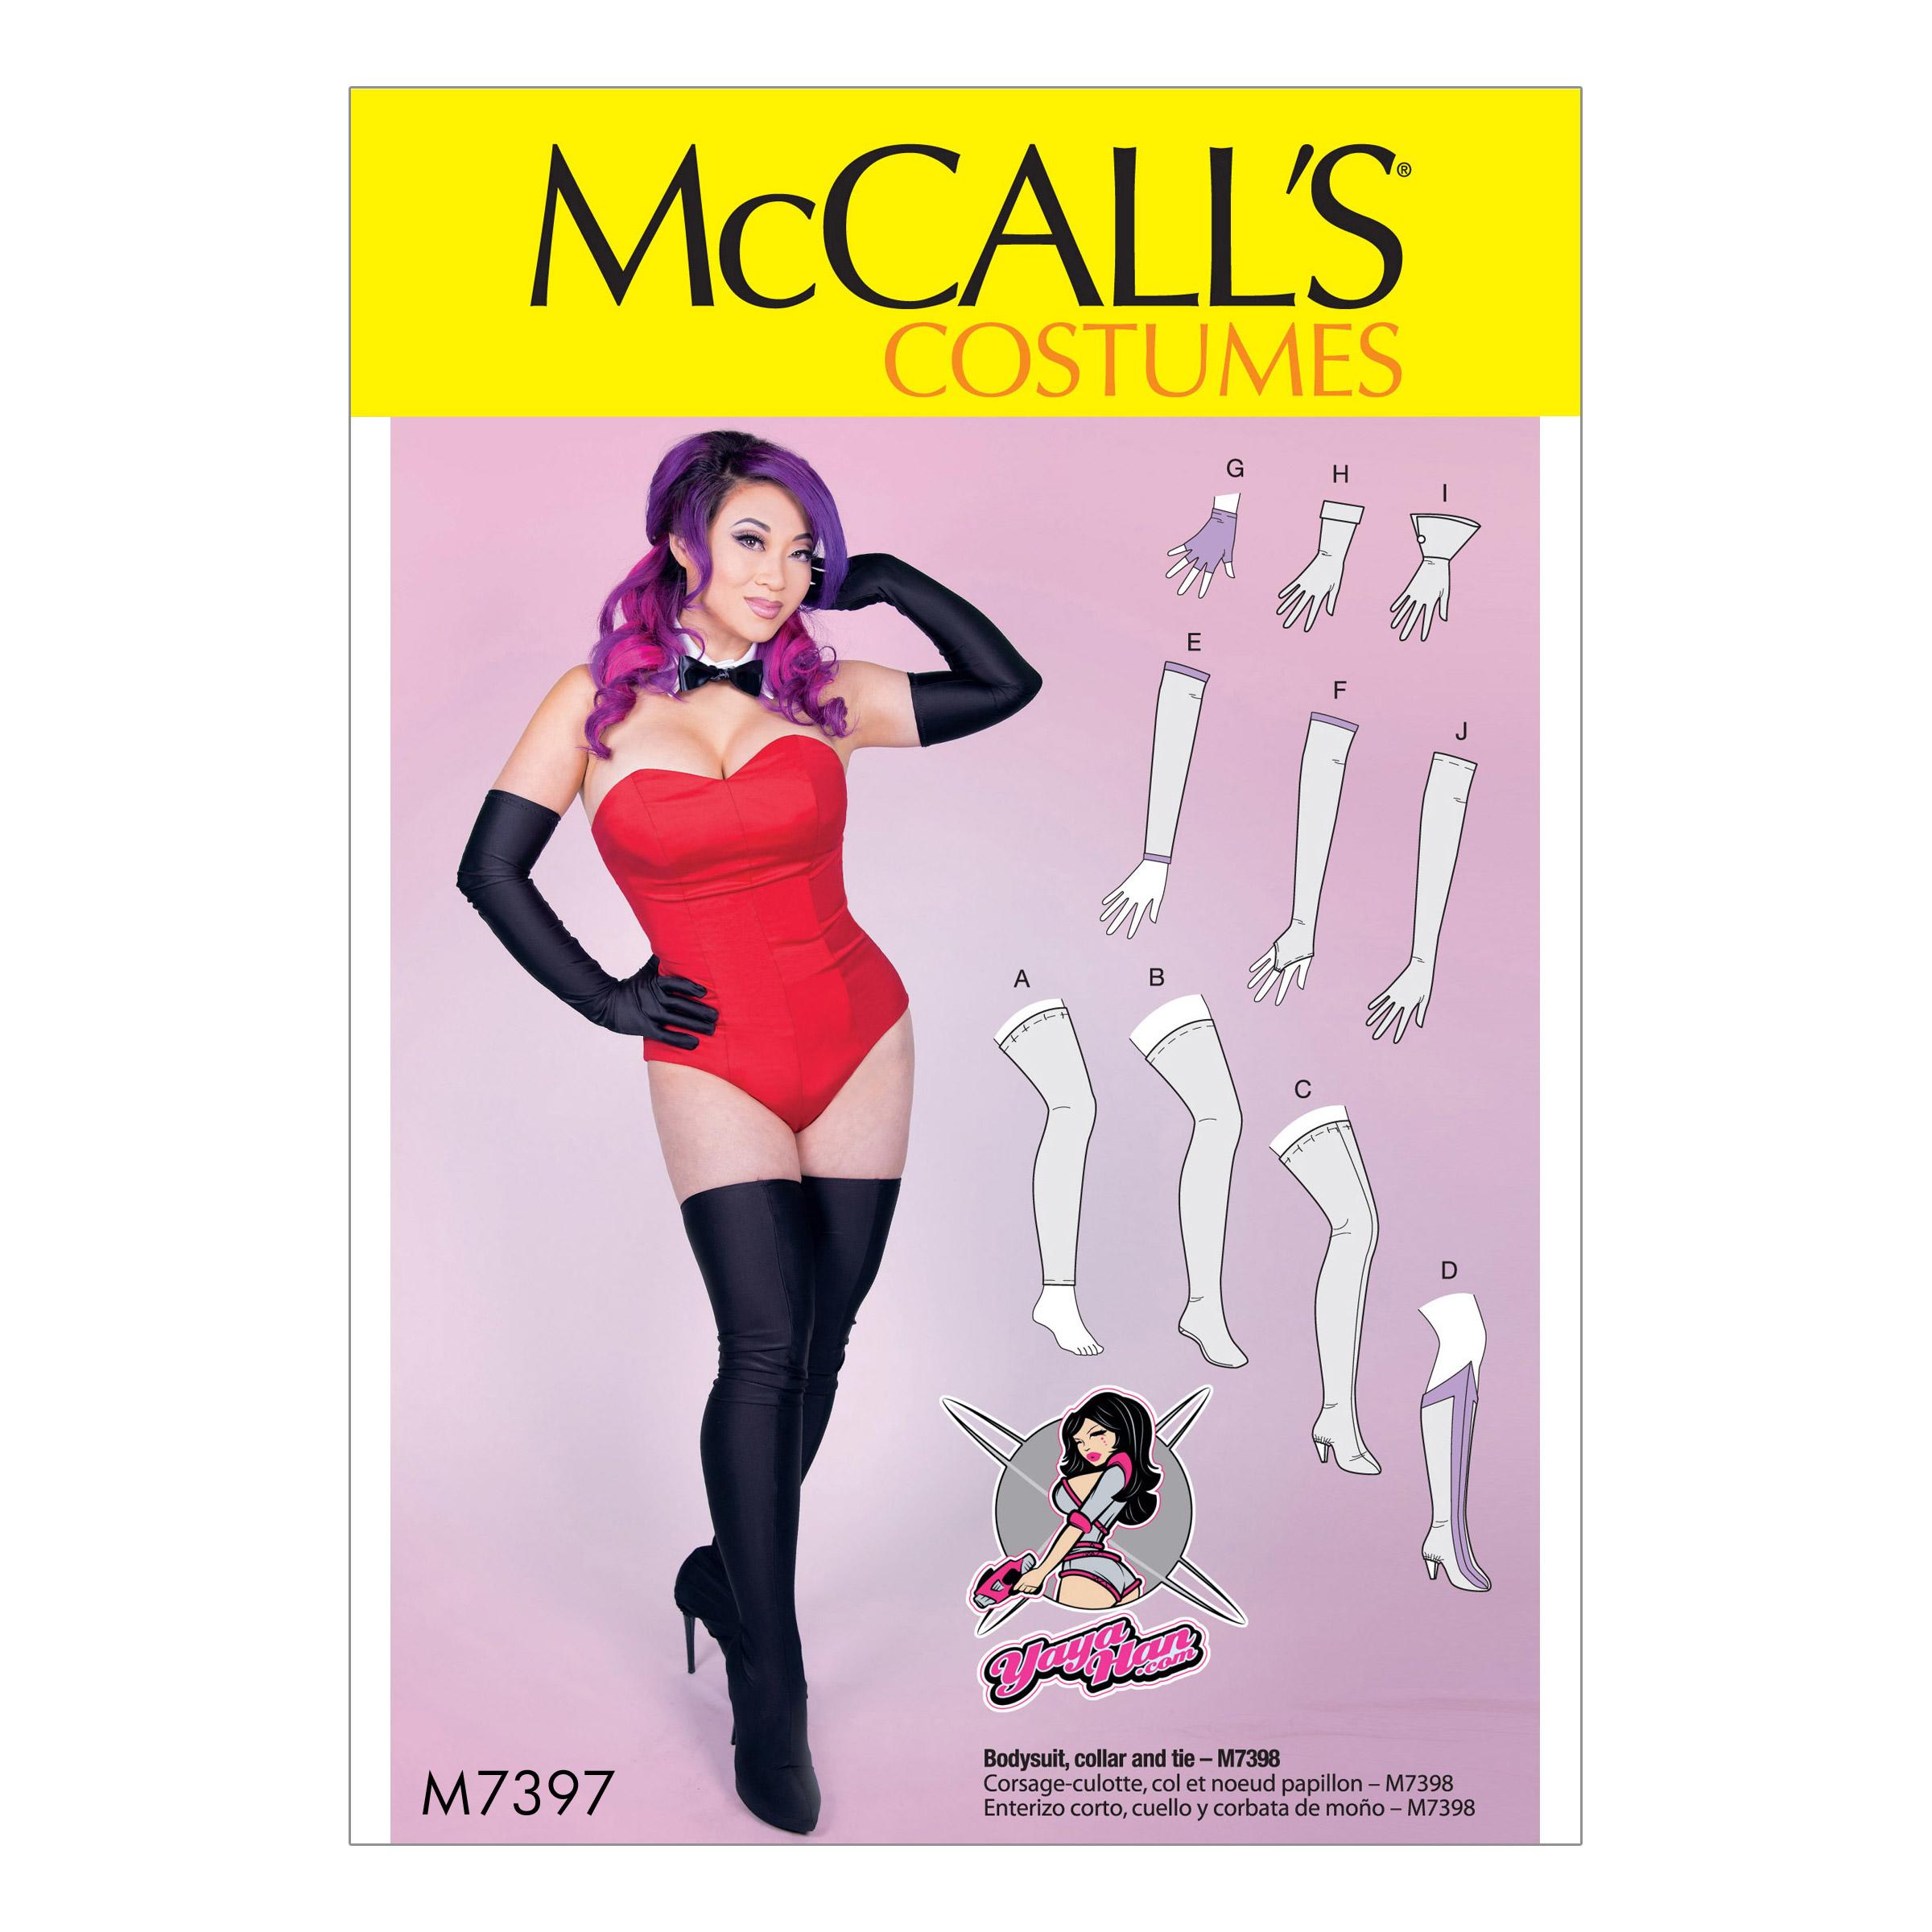 McCalls M7397 Costumes